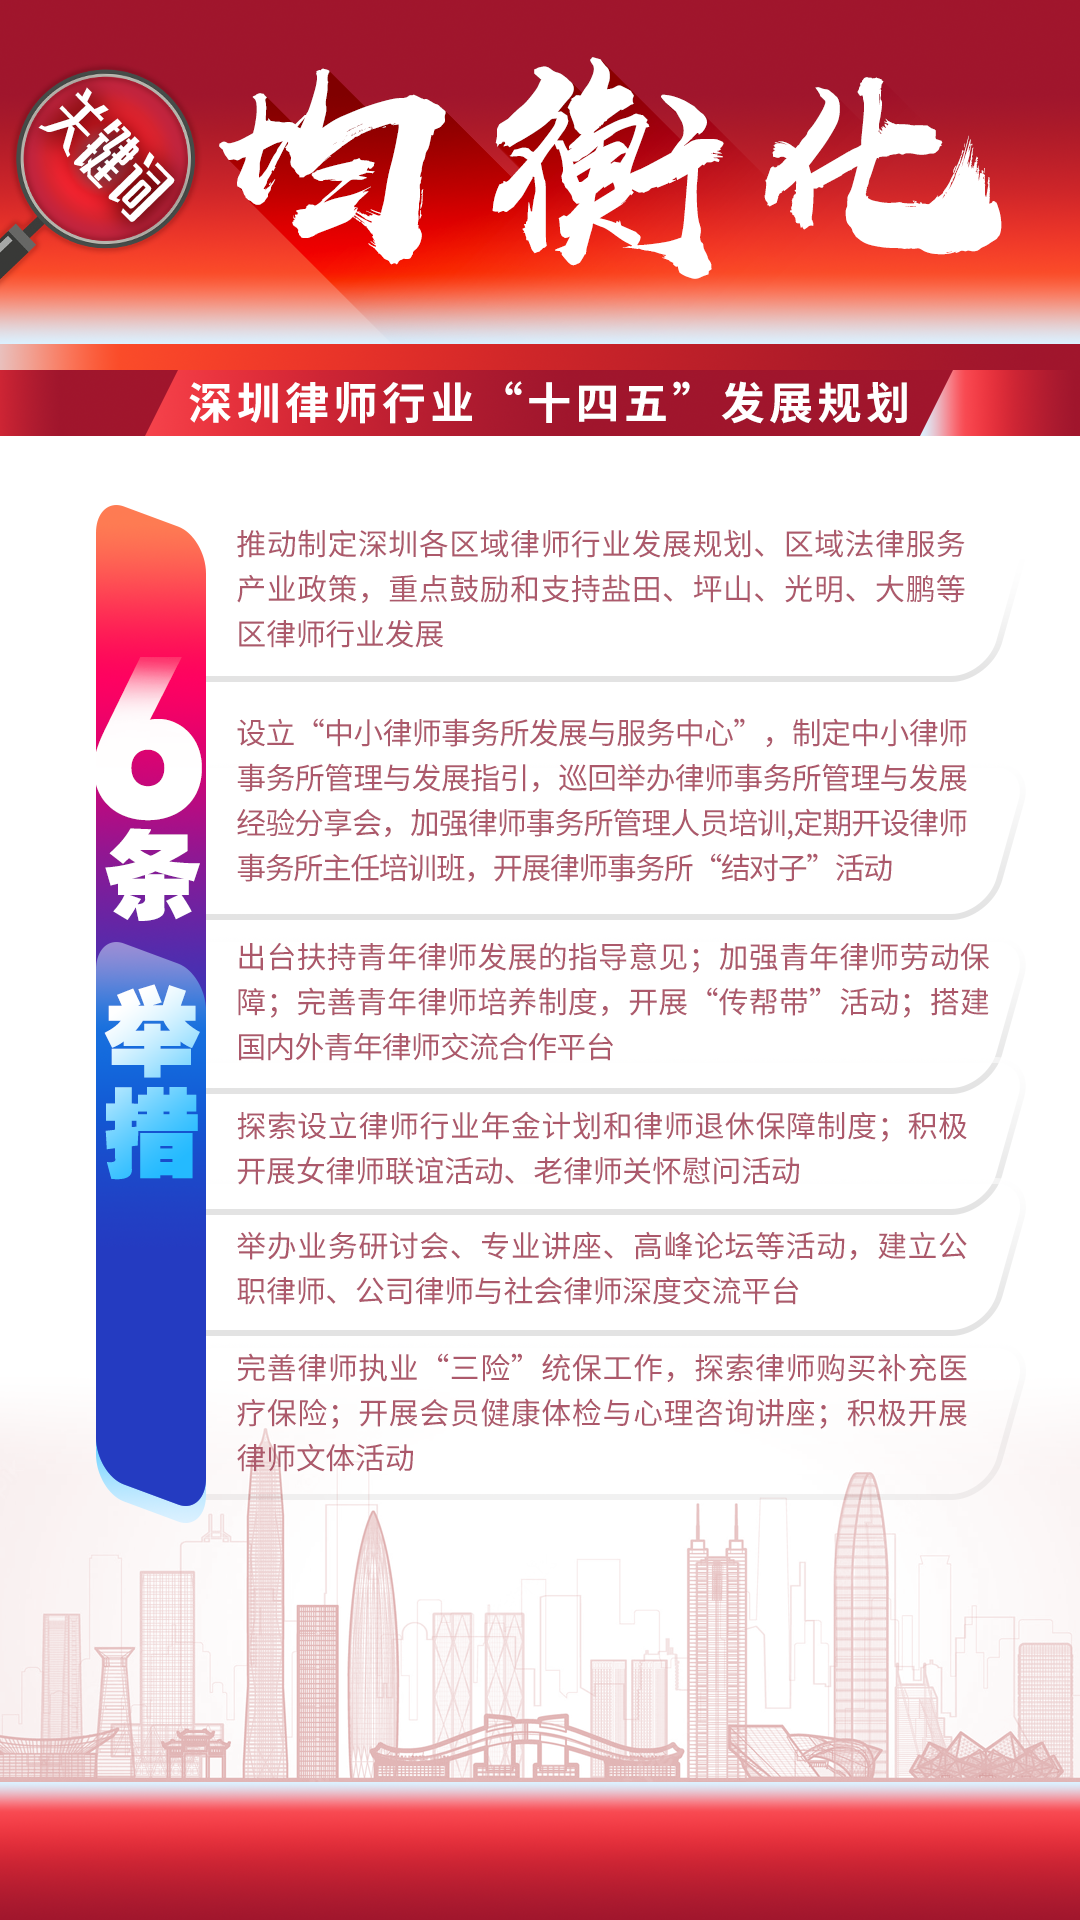 图解 | 深圳律师行业“十四五”发展规划（2021-2025）